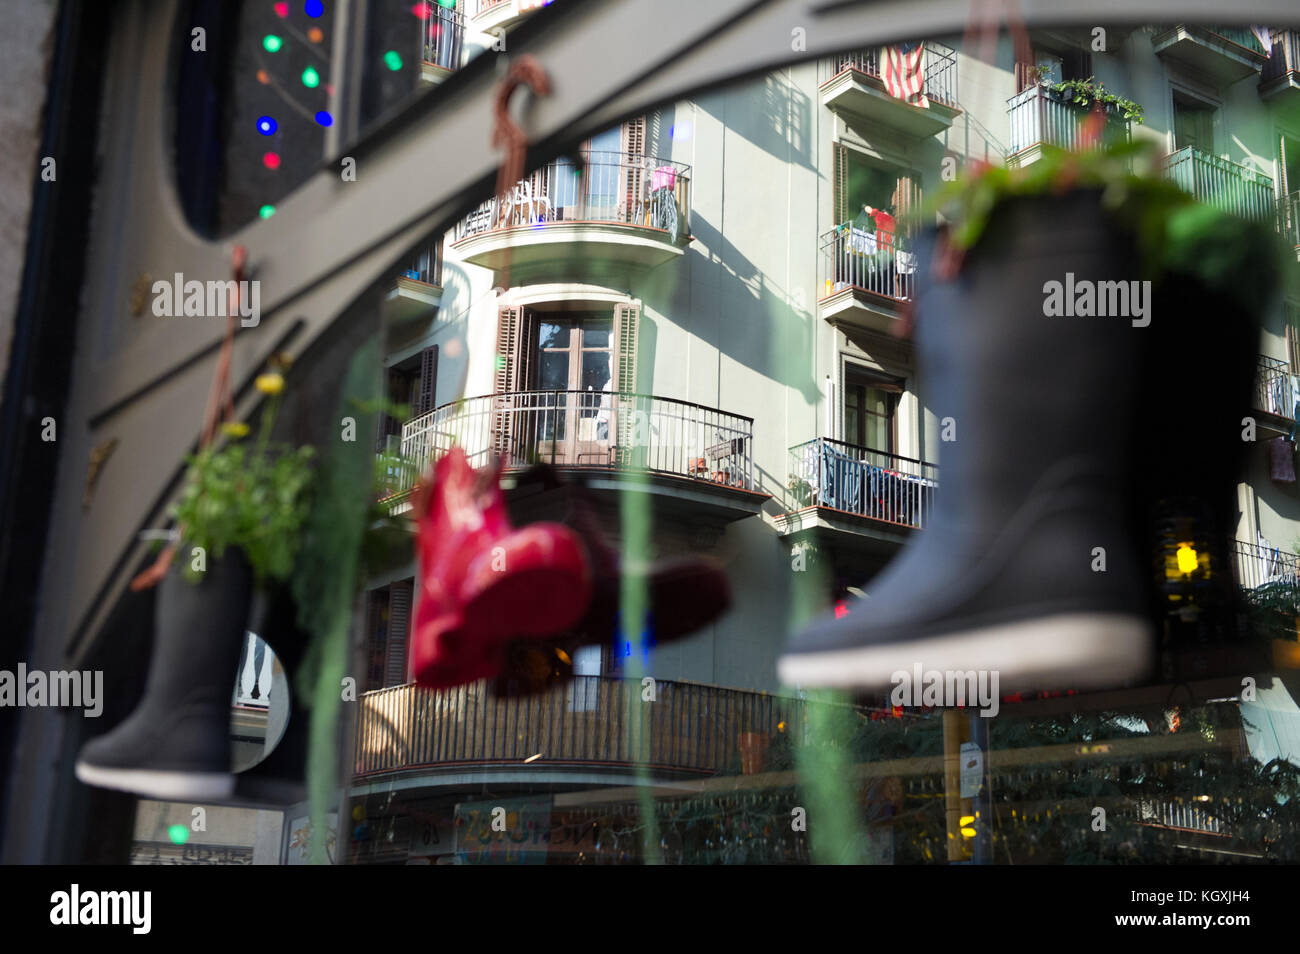 Hängende Blumentöpfe aus Wellington Boots außerhalb ein Shop in Barcelona, Spanien. Stockfoto